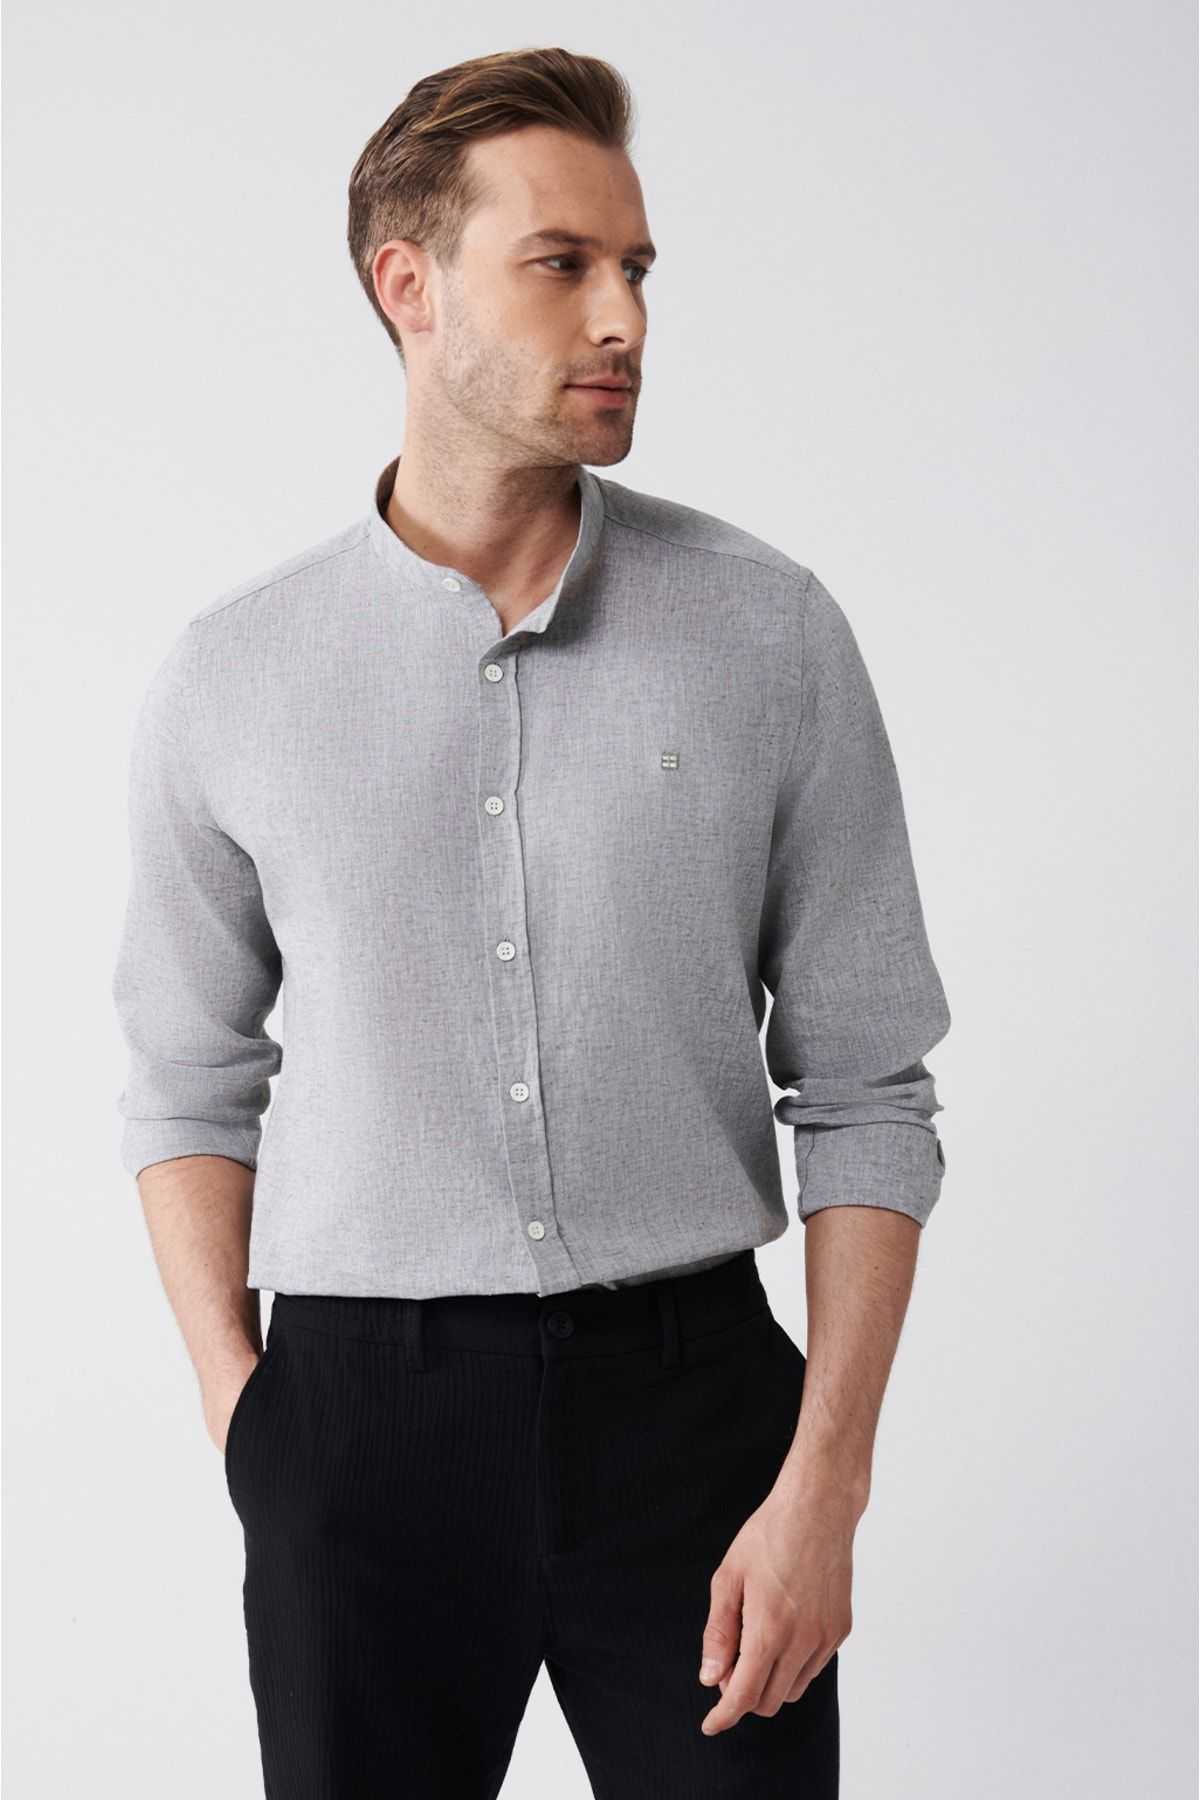 پیراهن کتانی یقه کلاسیک آنتراسیت مردانه ترکیبی استاندارد با برش معمولی